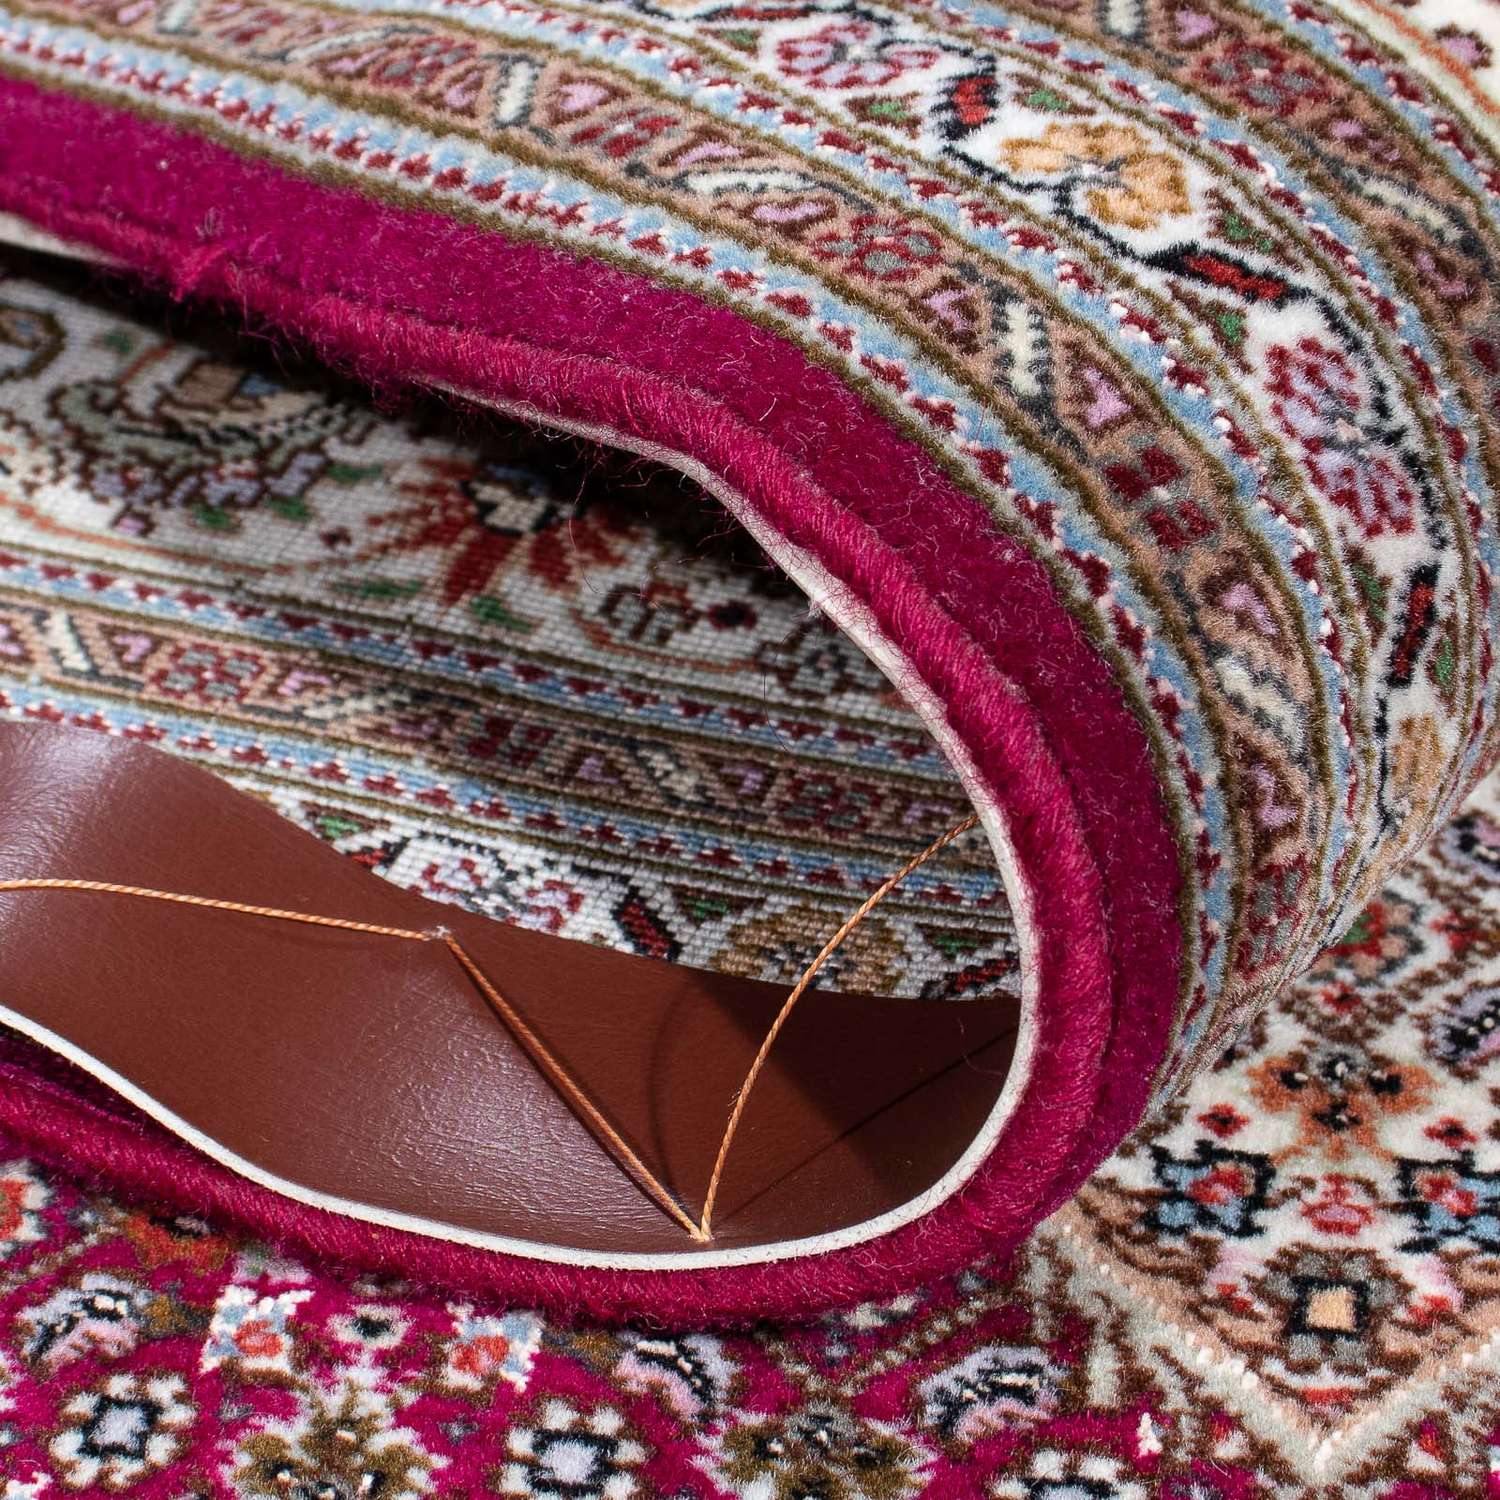 Perzisch tapijt - Tabriz - 306 x 205 cm - paars